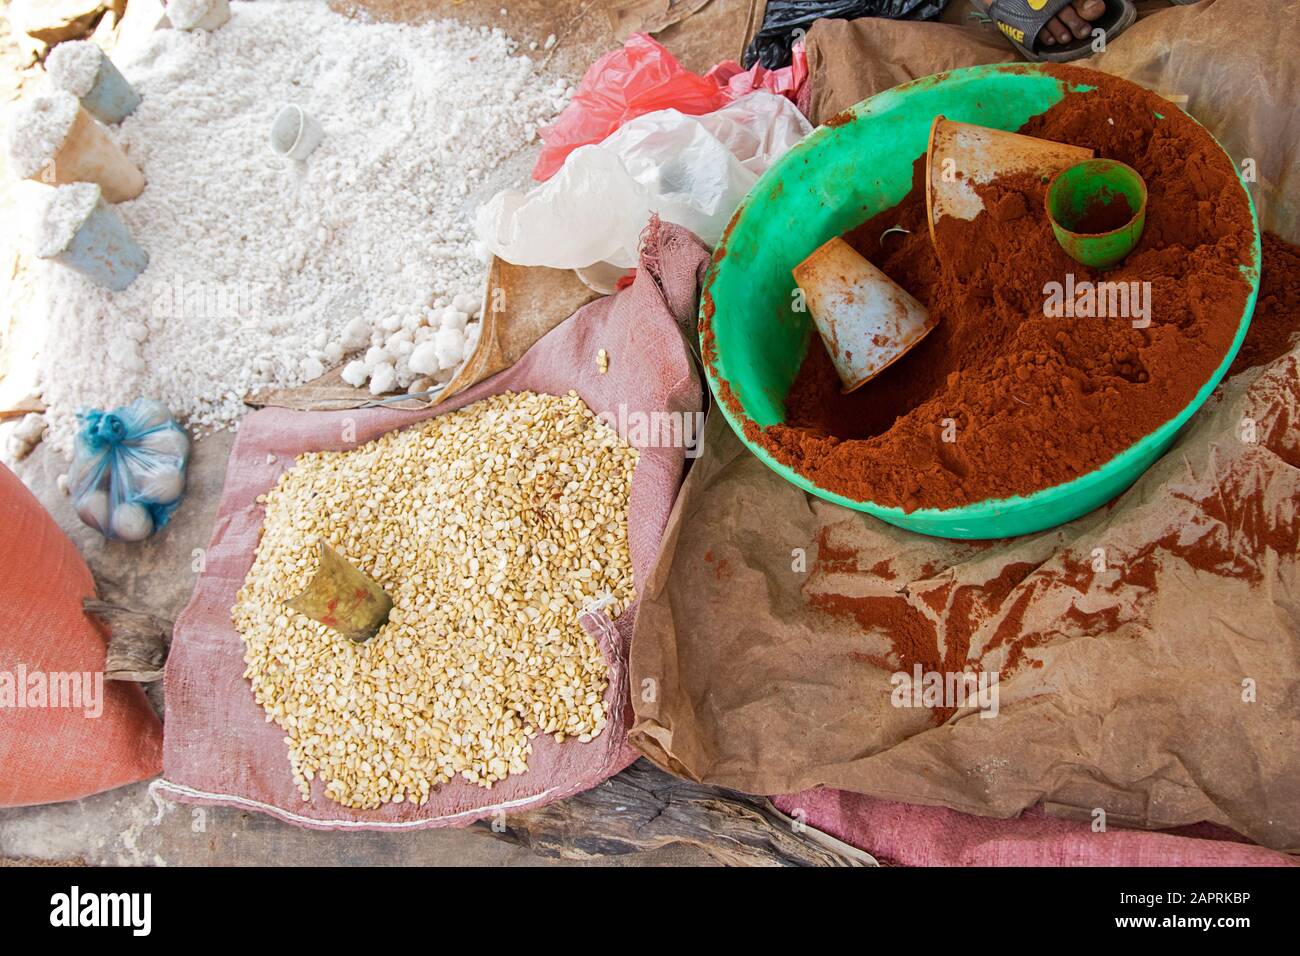 Sel, Chili et maïs sur le marché local de Bonga, dans la région de Kaffa, en Ethiopie Banque D'Images